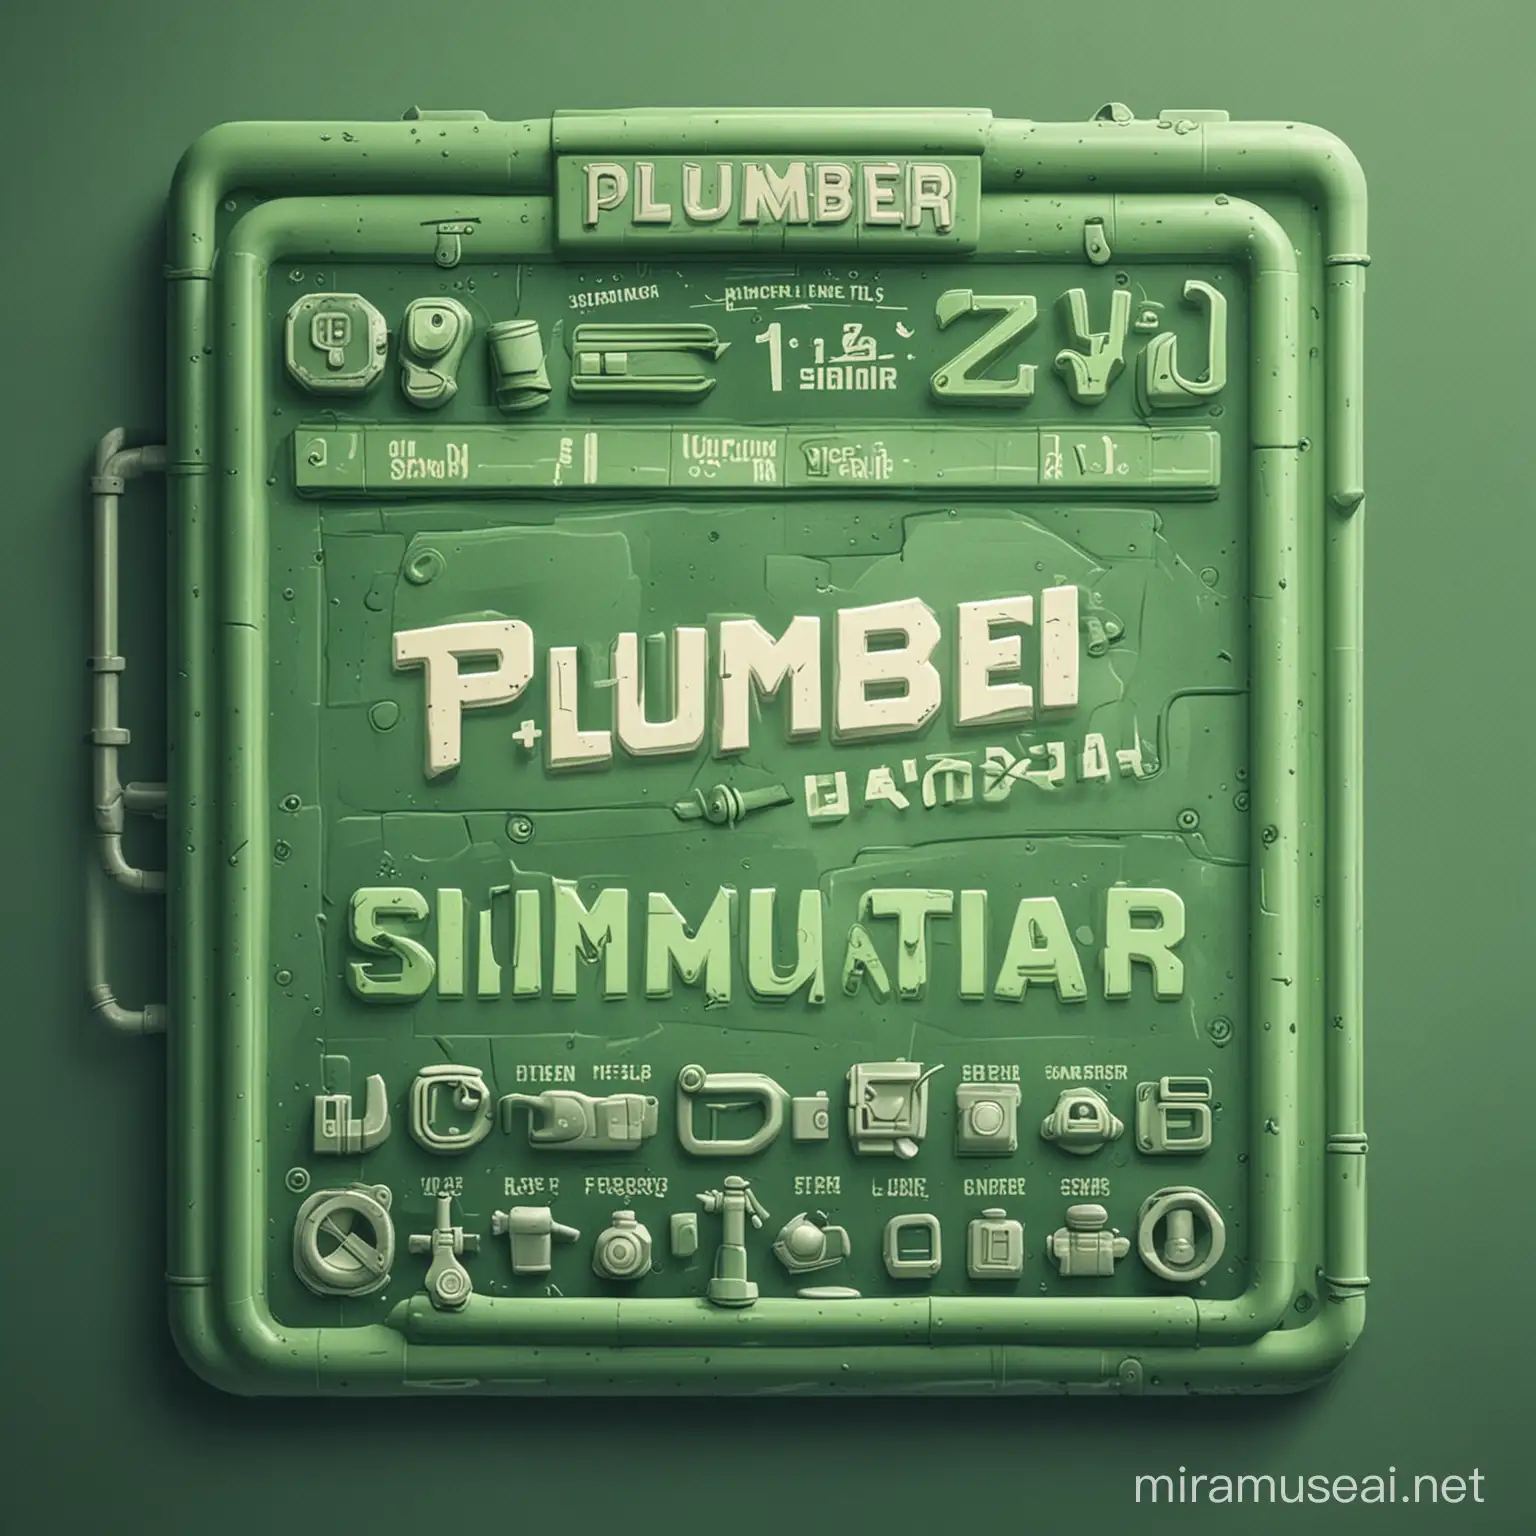 Prepara una schermata di gioco  di un videogioco chiamato plumber simulator. Con una grafica simpatica ed accattivante con un colore verde predominante